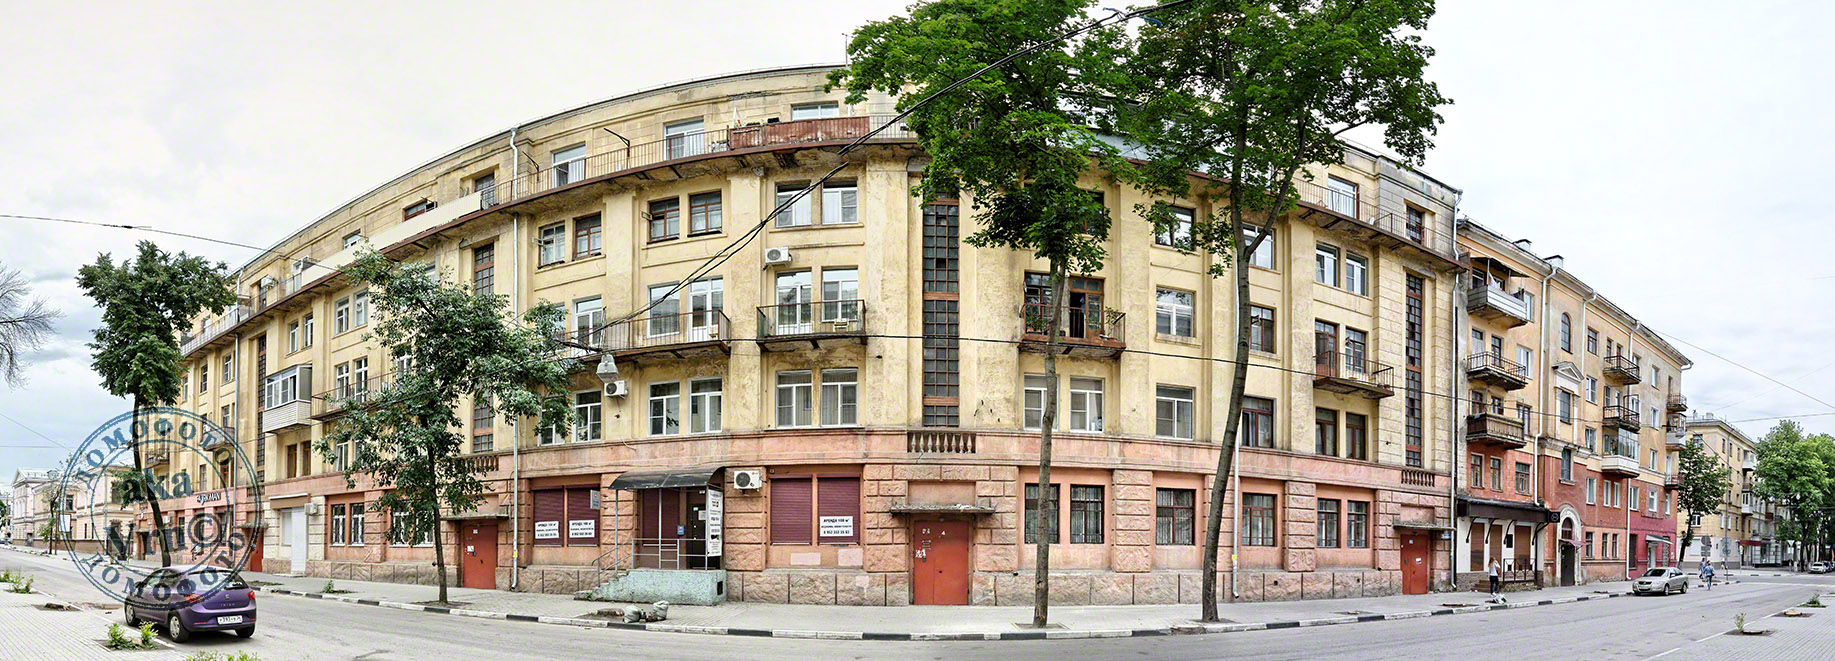 Woroneż, Улица Чайковского, 1; Улица Фридриха Энгельса, 13